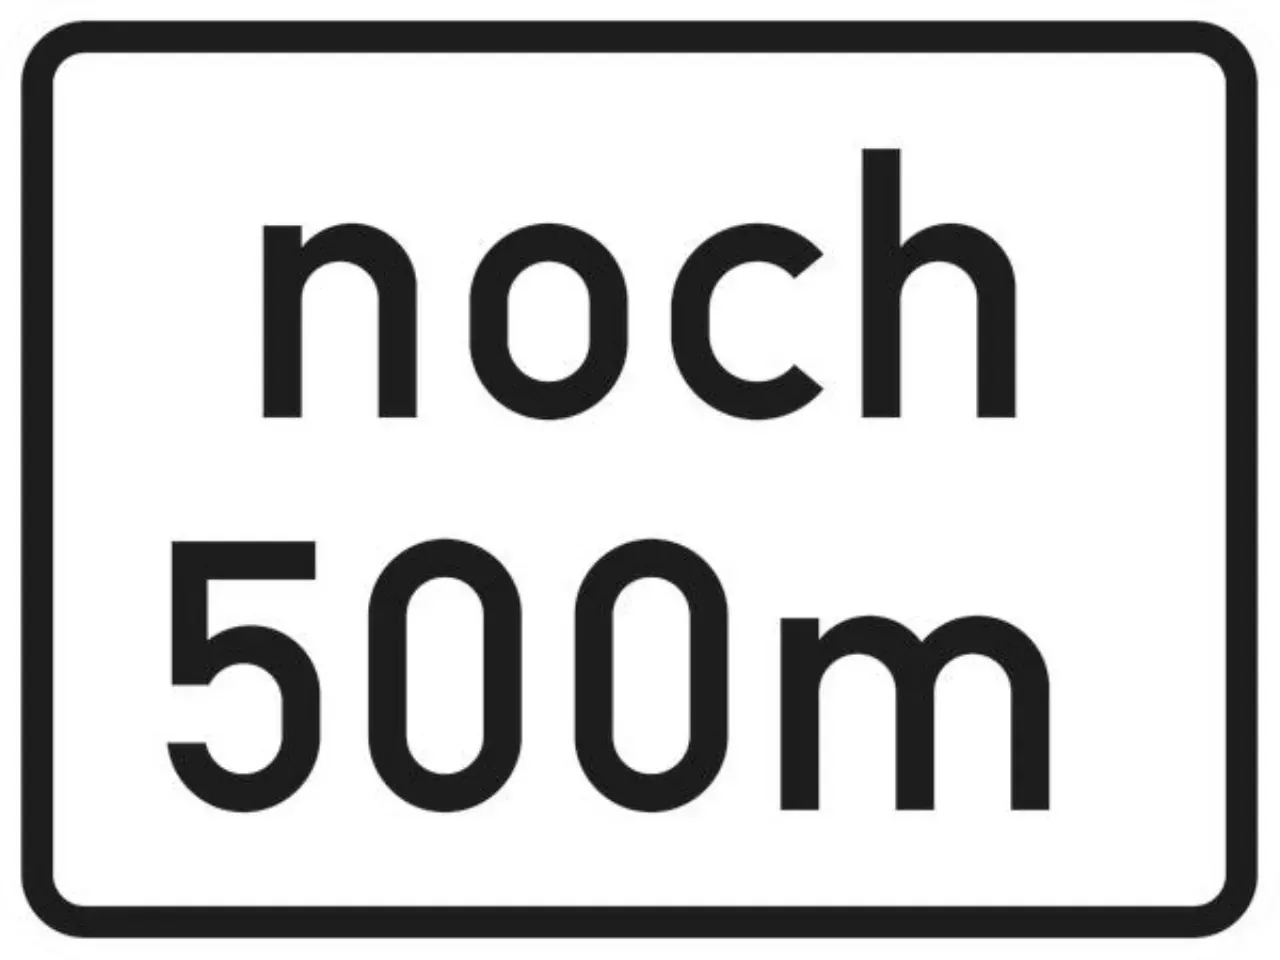 Verkehrszeichen 1001-32 noch . m (gemäß VwV-StVO in Tunneln) - 315x420 2 mm RA2